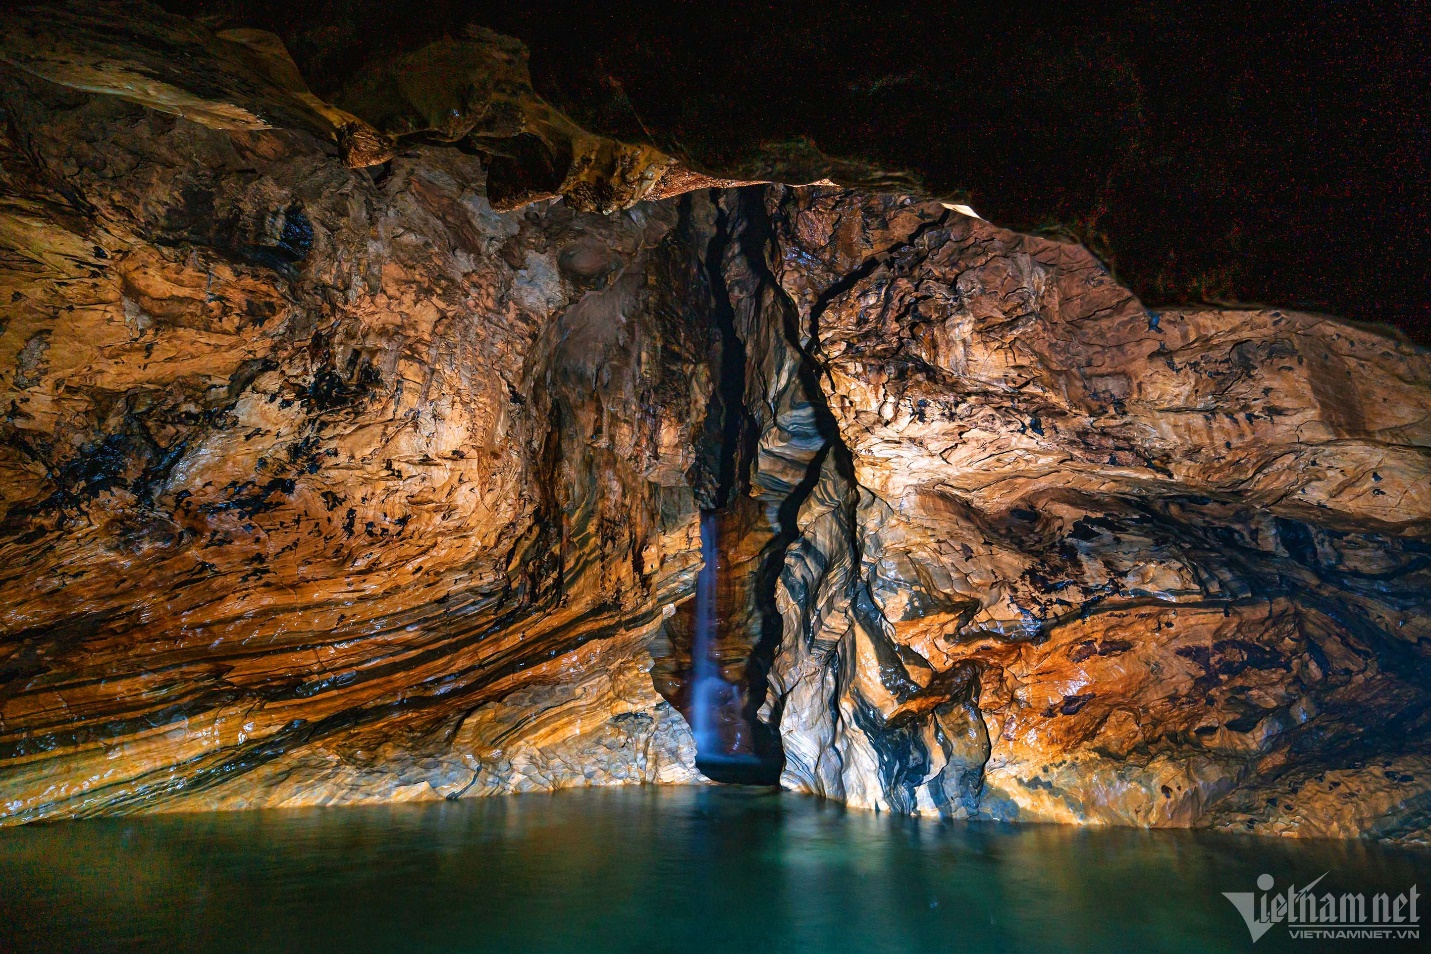 Ngắm nghìn thạch nhũ lạ mắt trong hang Bó Mỳ, điểm đến mới tuyệt đẹp ở Hà Giang - 1